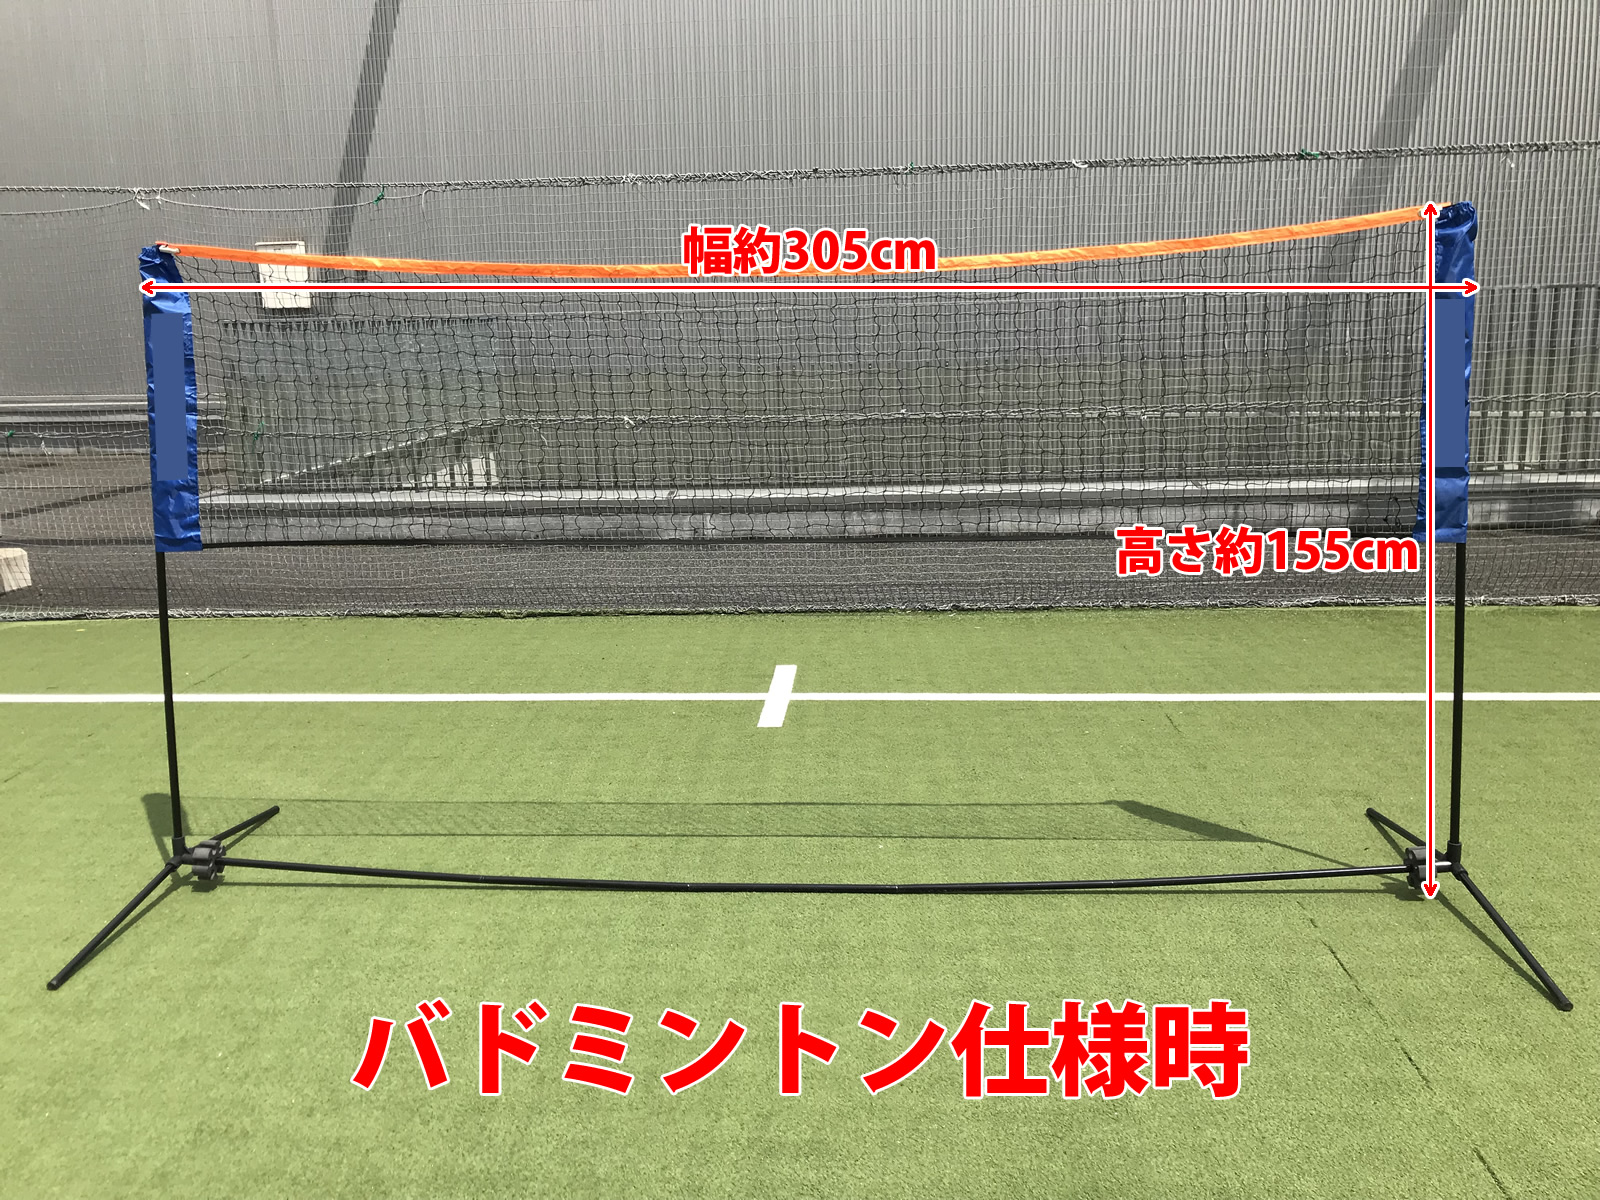 新品同様バドミントン テニス 兼用簡易ネット 練習 収納ケース付き 組み立て簡単 racketfield 支柱・ネット